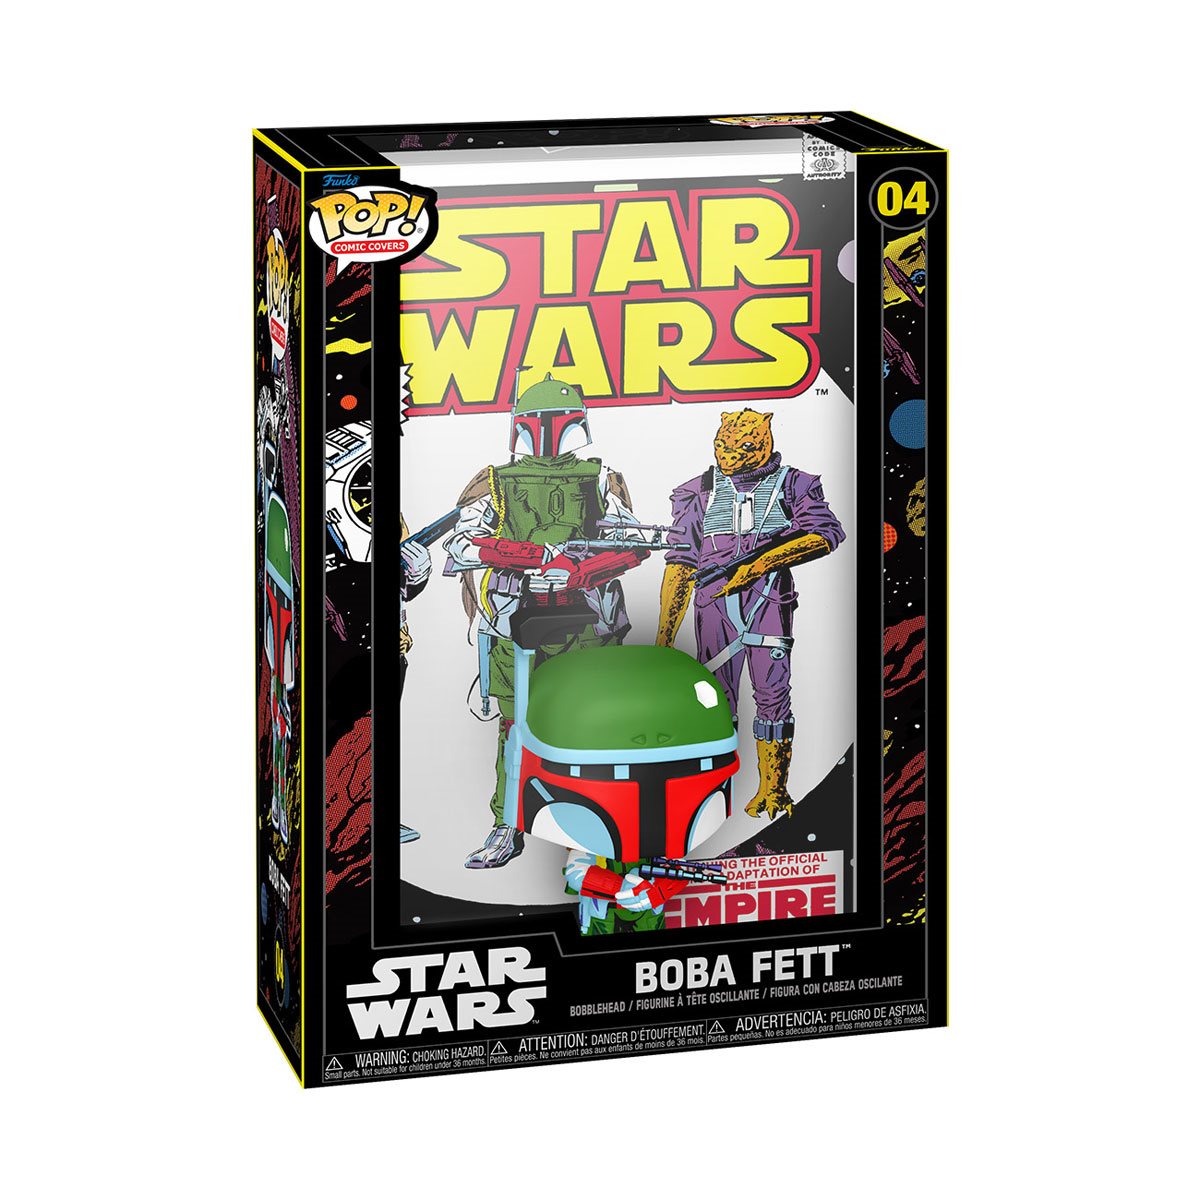 POP! Star Wars: The Empire Strikes Back - Boba Fett Comic Cover